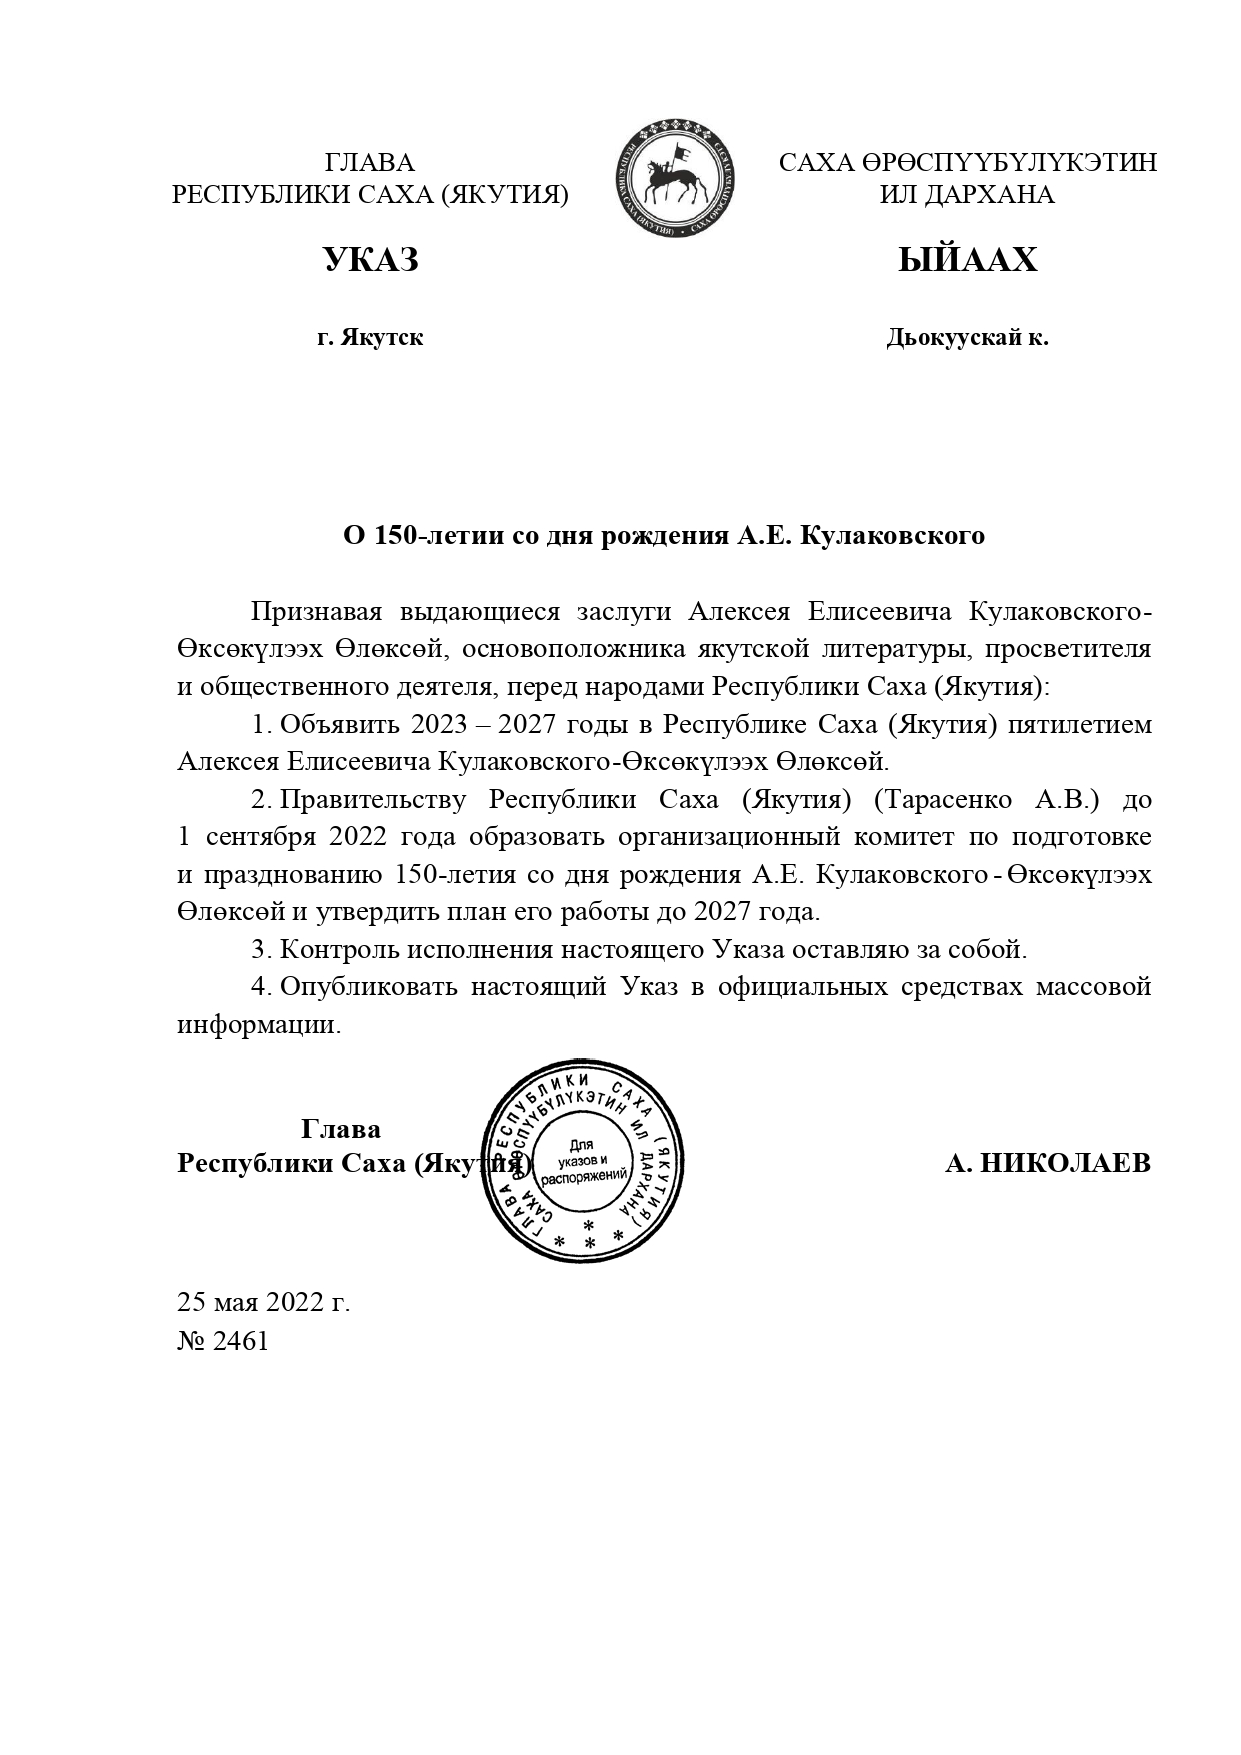 Указ Главы Республики Саха (Якутия) от 25 мая 2022 года № 2461 «О 150-летии со дня рождения А.Е. Кулаковского»